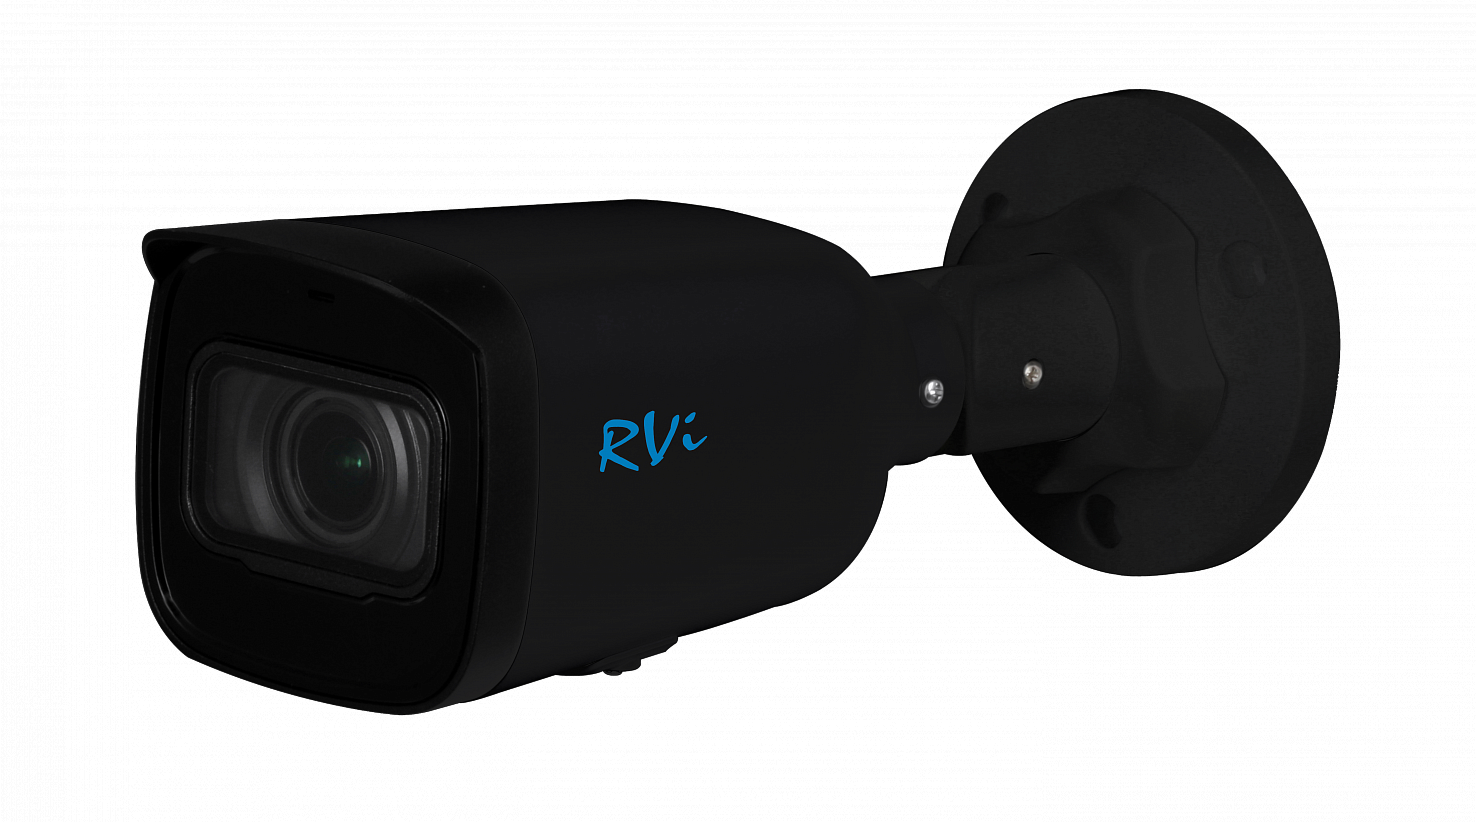 RVi-1NCT4143-P (2.8-12) black - купить в интернет магазине с доставкой, цены, описание, характеристики, отзывы